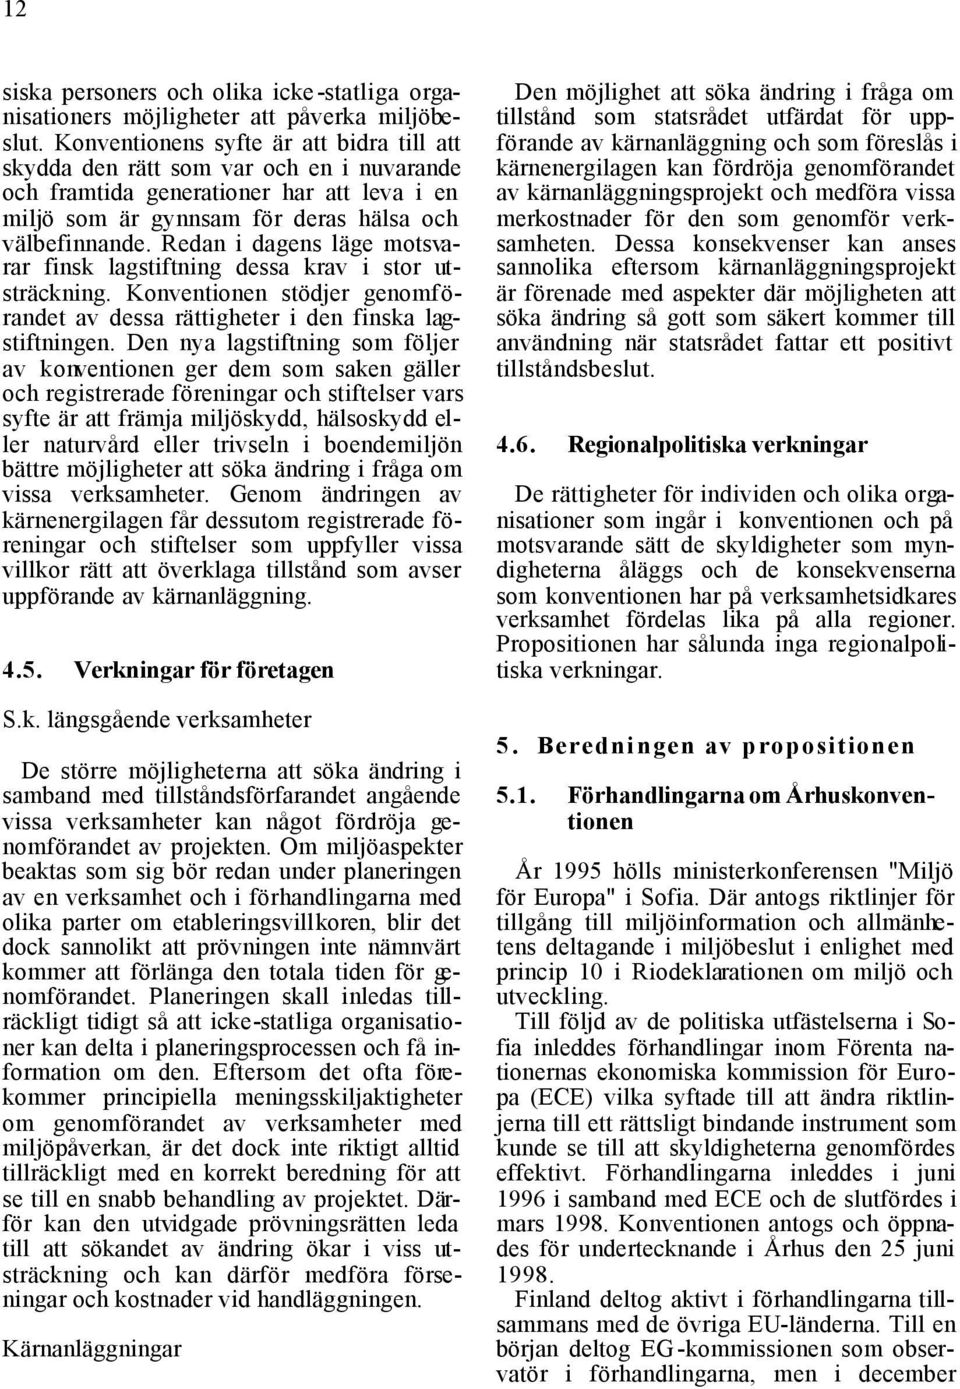 Redan i dagens läge motsvarar finsk lagstiftning dessa krav i stor utsträckning. Konventionen stödjer genomförandet av dessa rättigheter i den finska lagstiftningen.